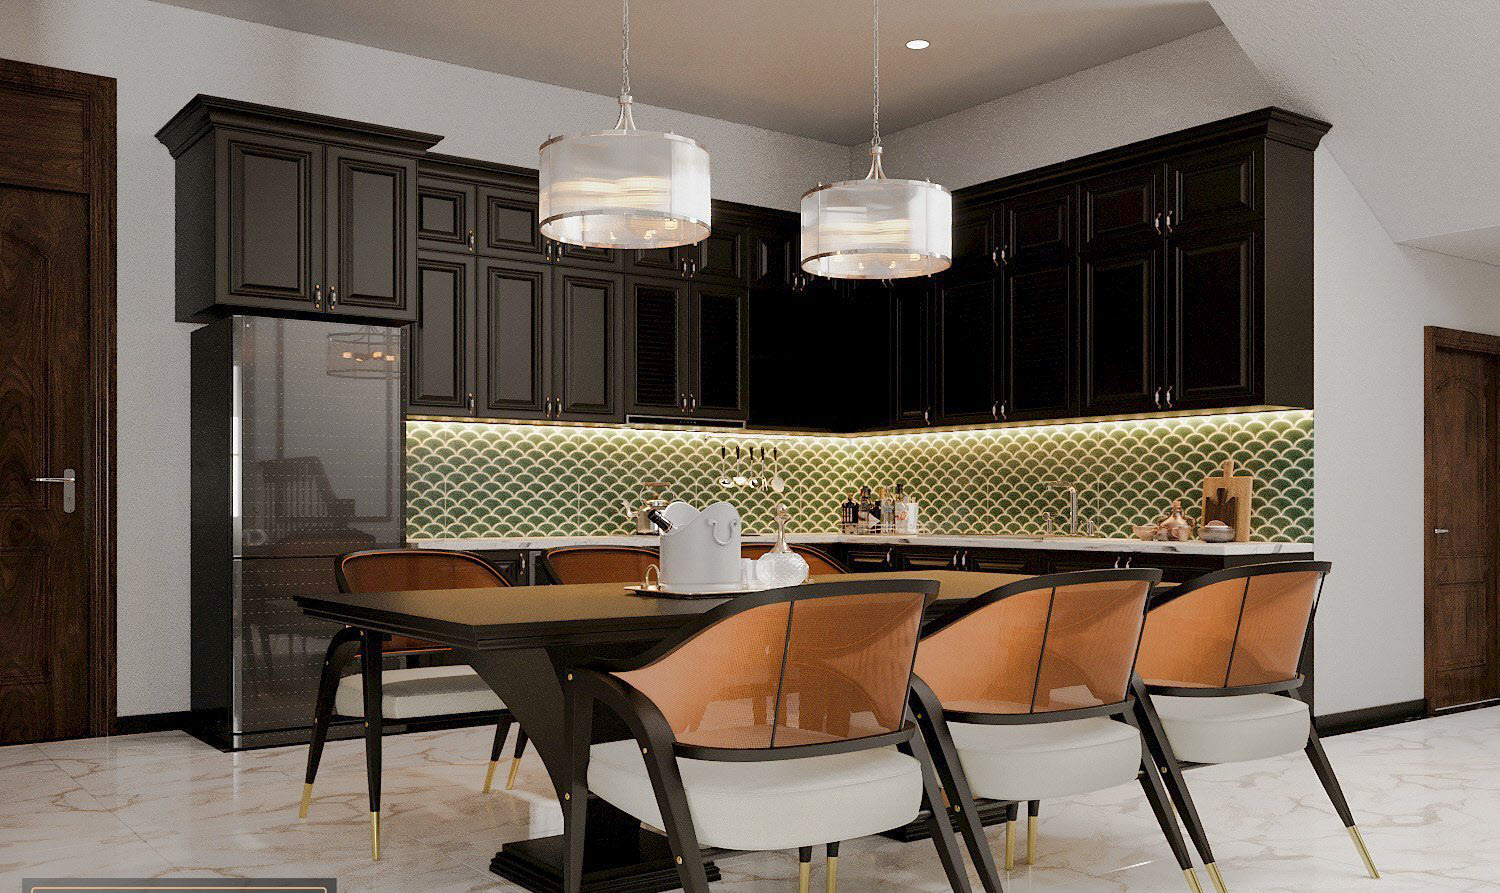 Bộ bàn ghế ăn với kiểu dáng hiện đại, tông màu sang trọng trở thành tâm điểm của gian bếp.